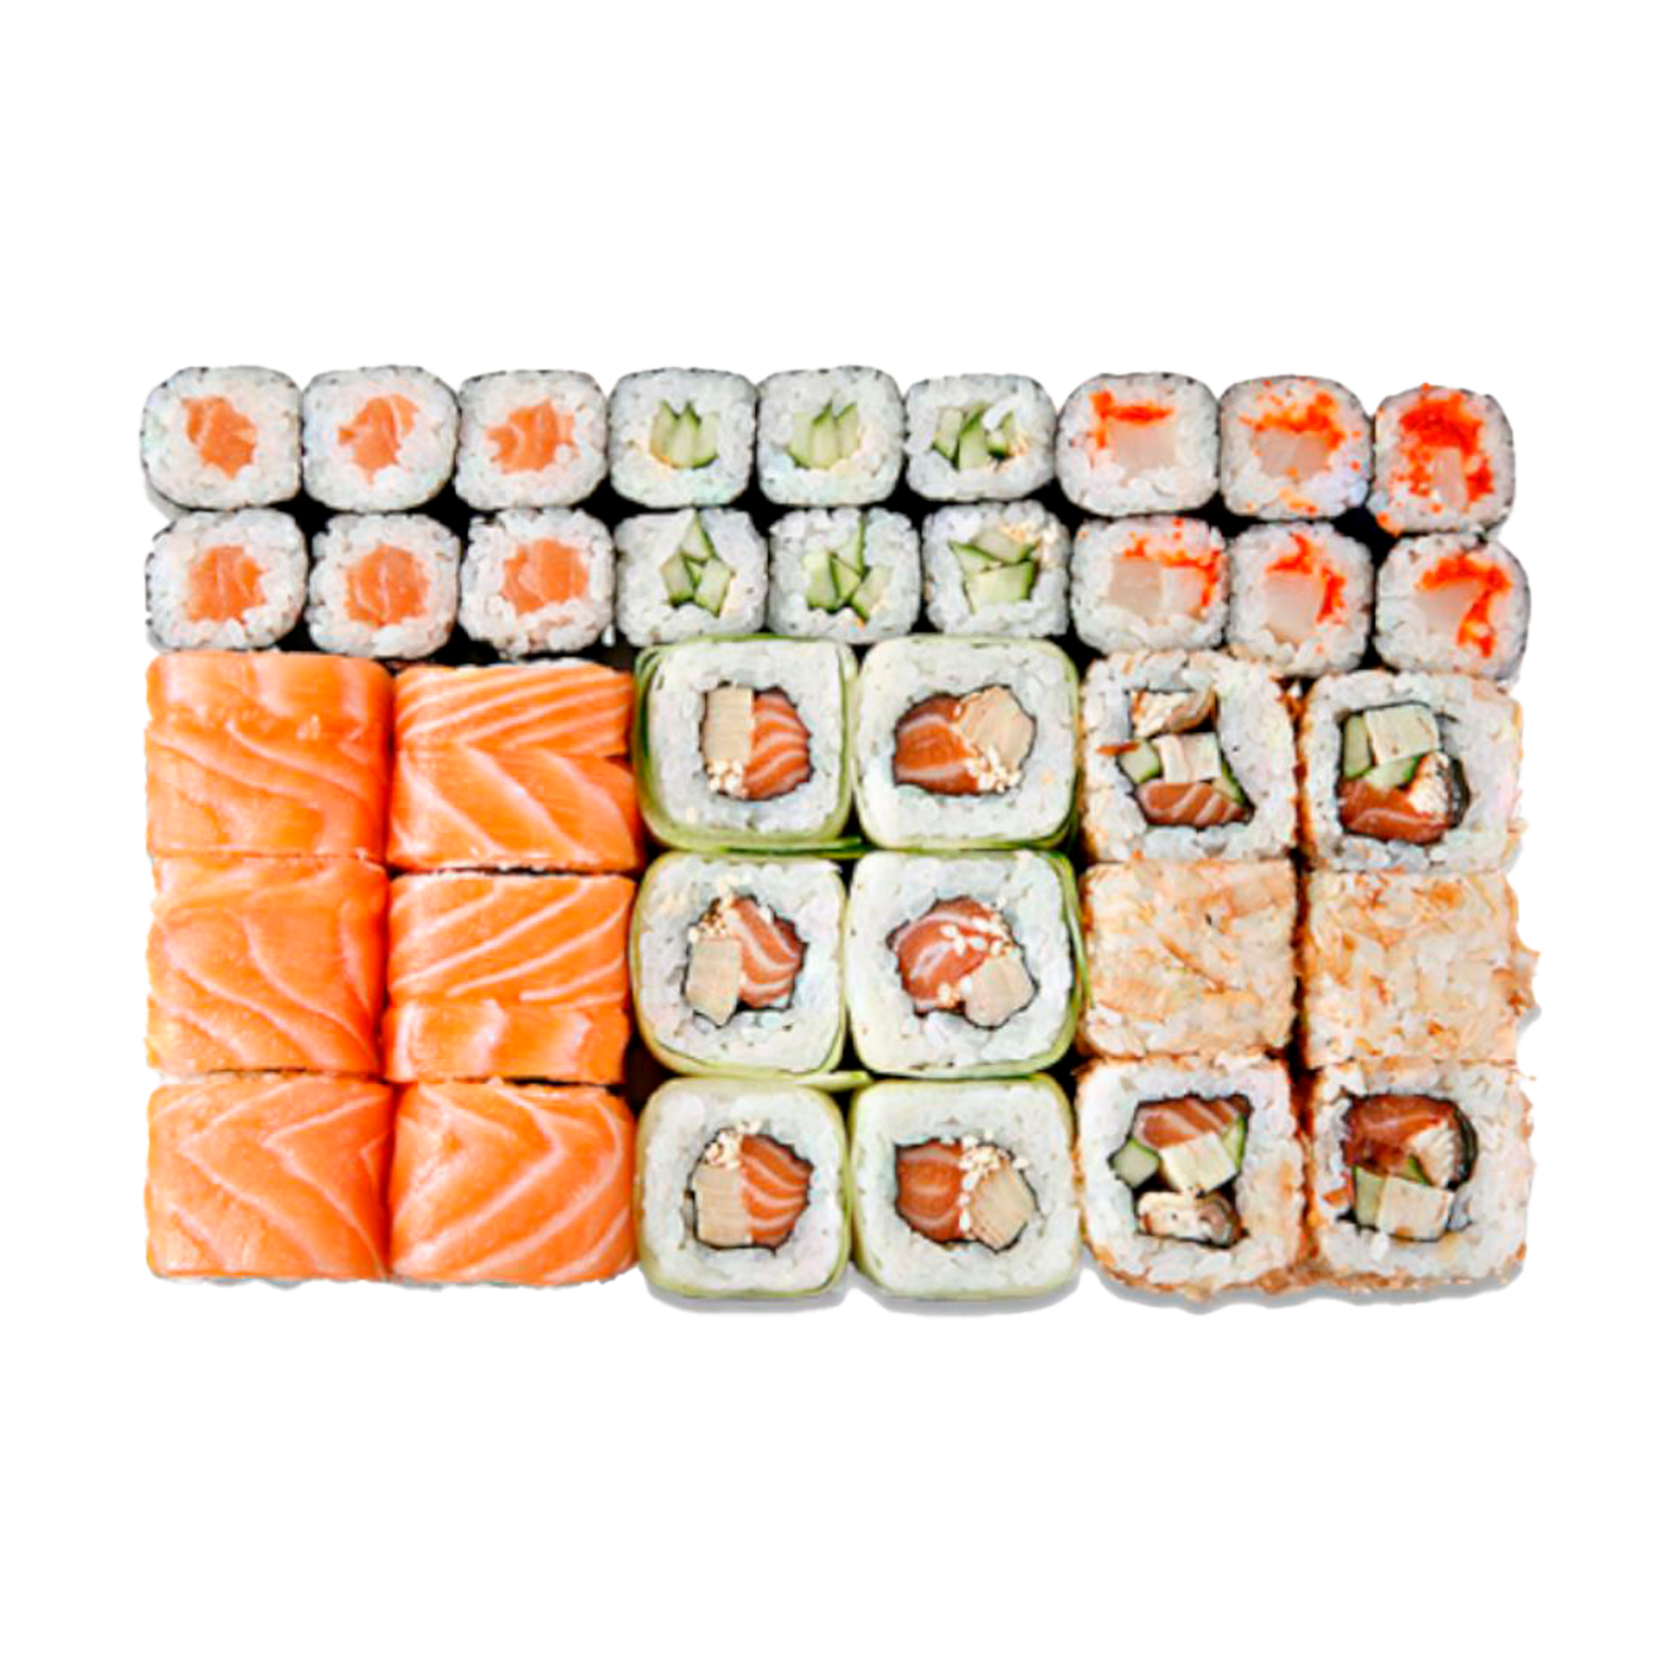 Заказать суши с доставкой на дом чебоксары фото 79